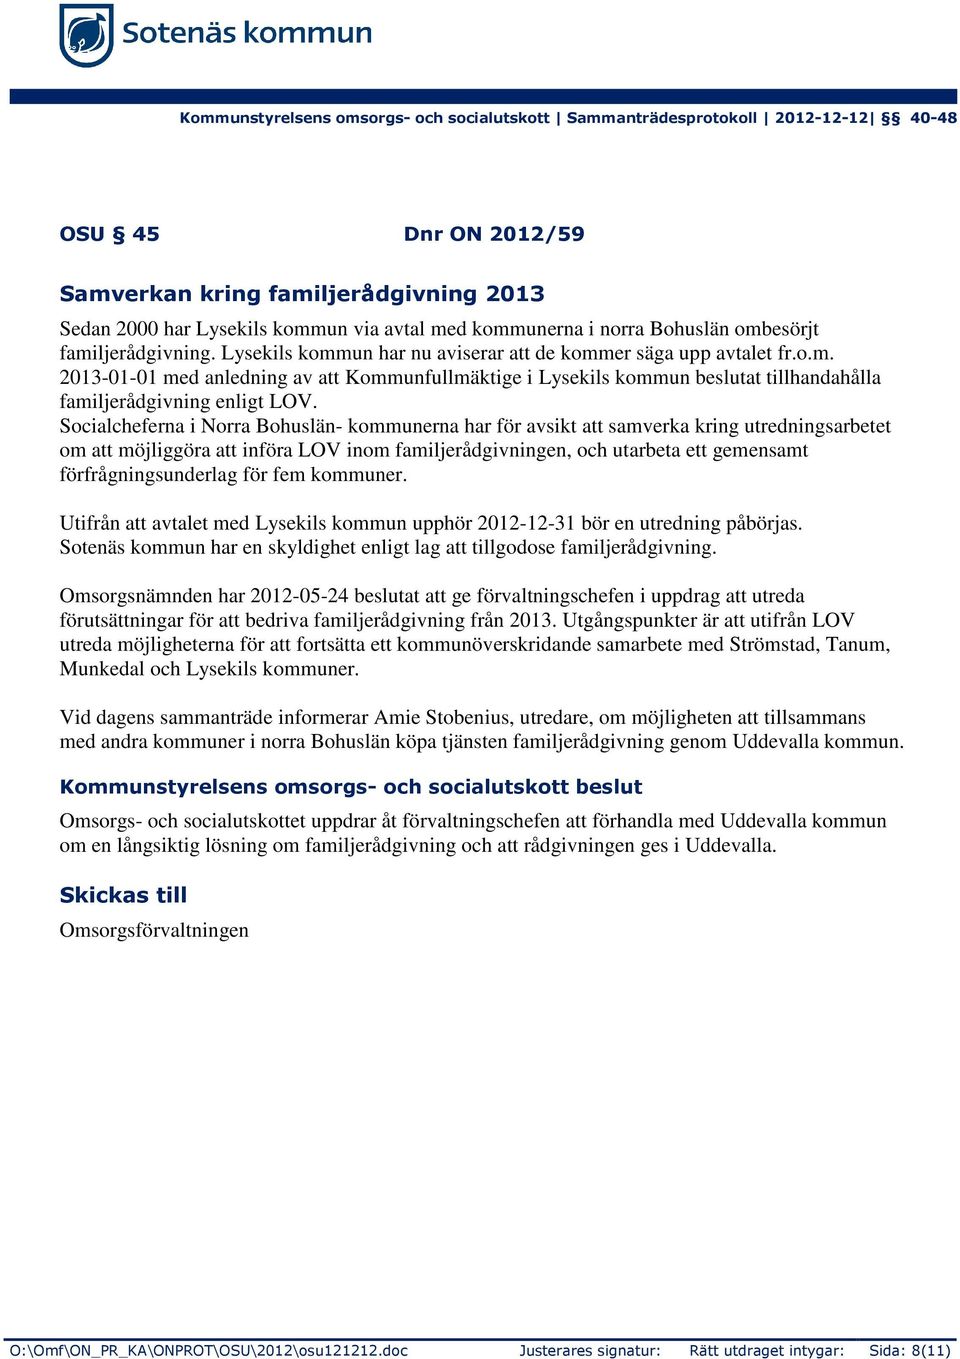 Socialcheferna i Norra Bohuslän- kommunerna har för avsikt att samverka kring utredningsarbetet om att möjliggöra att införa LOV inom familjerådgivningen, och utarbeta ett gemensamt